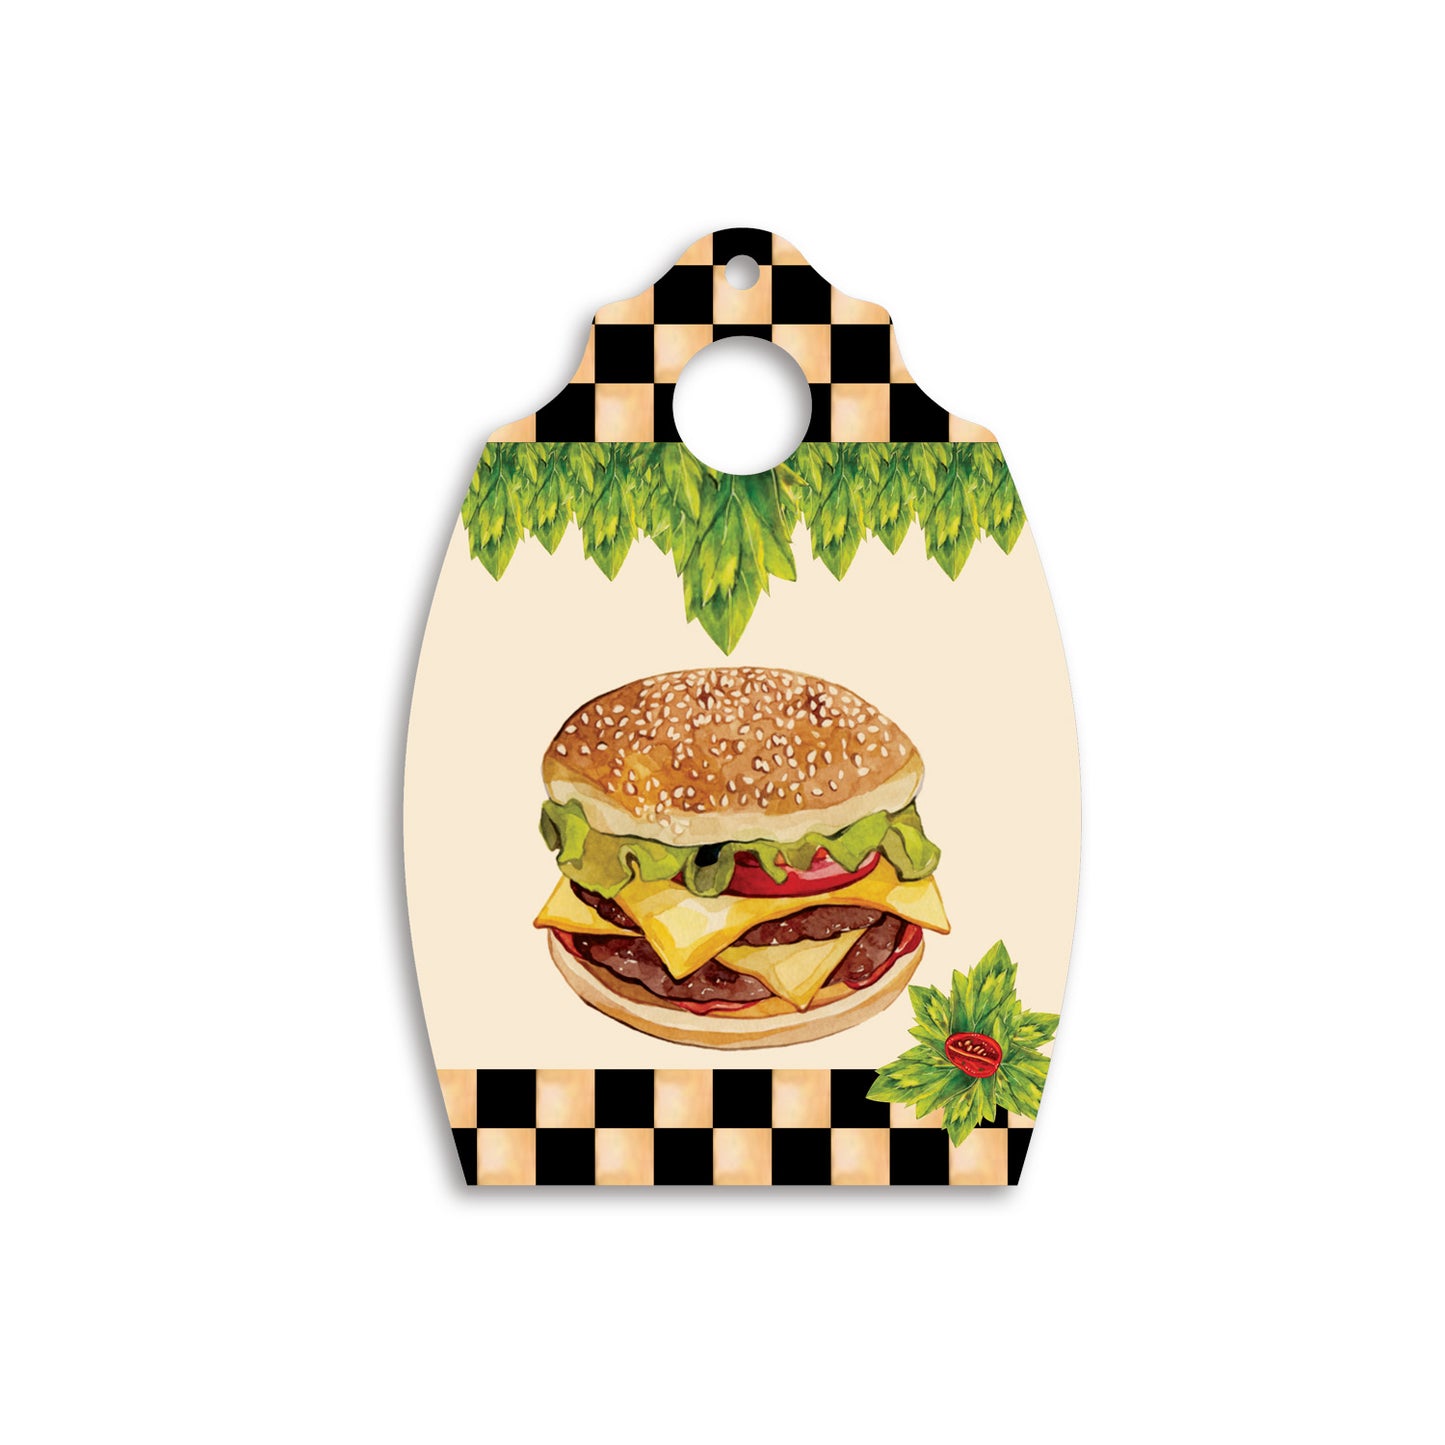 Burger Platter SP 011